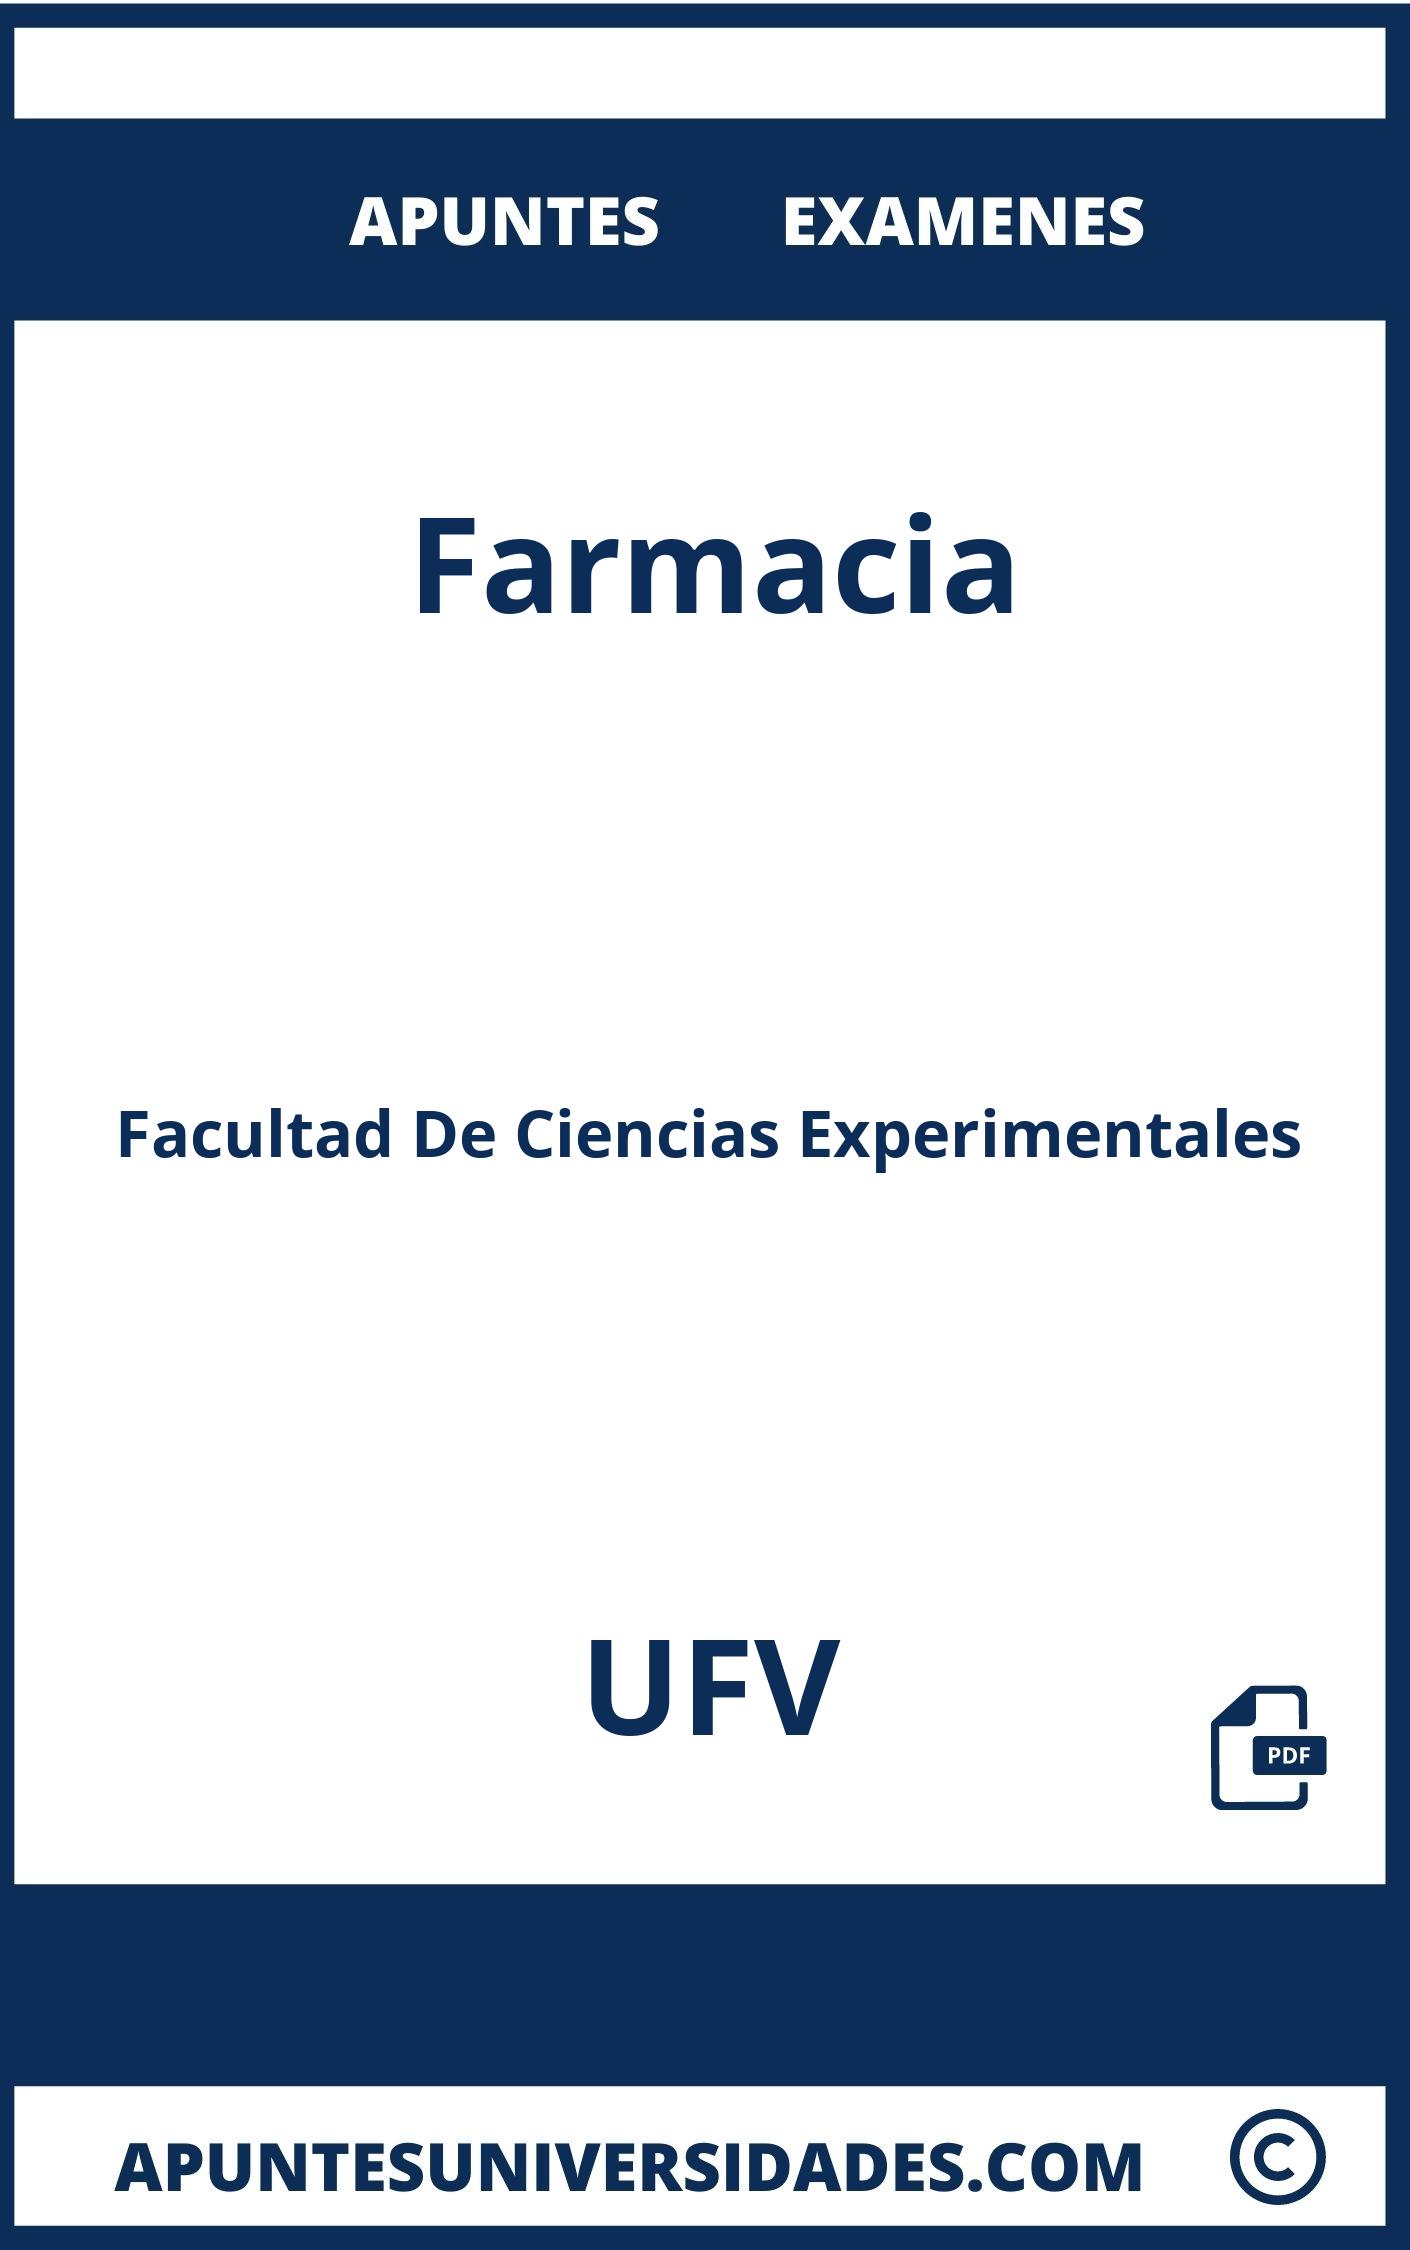 Apuntes y Examenes Farmacia UFV